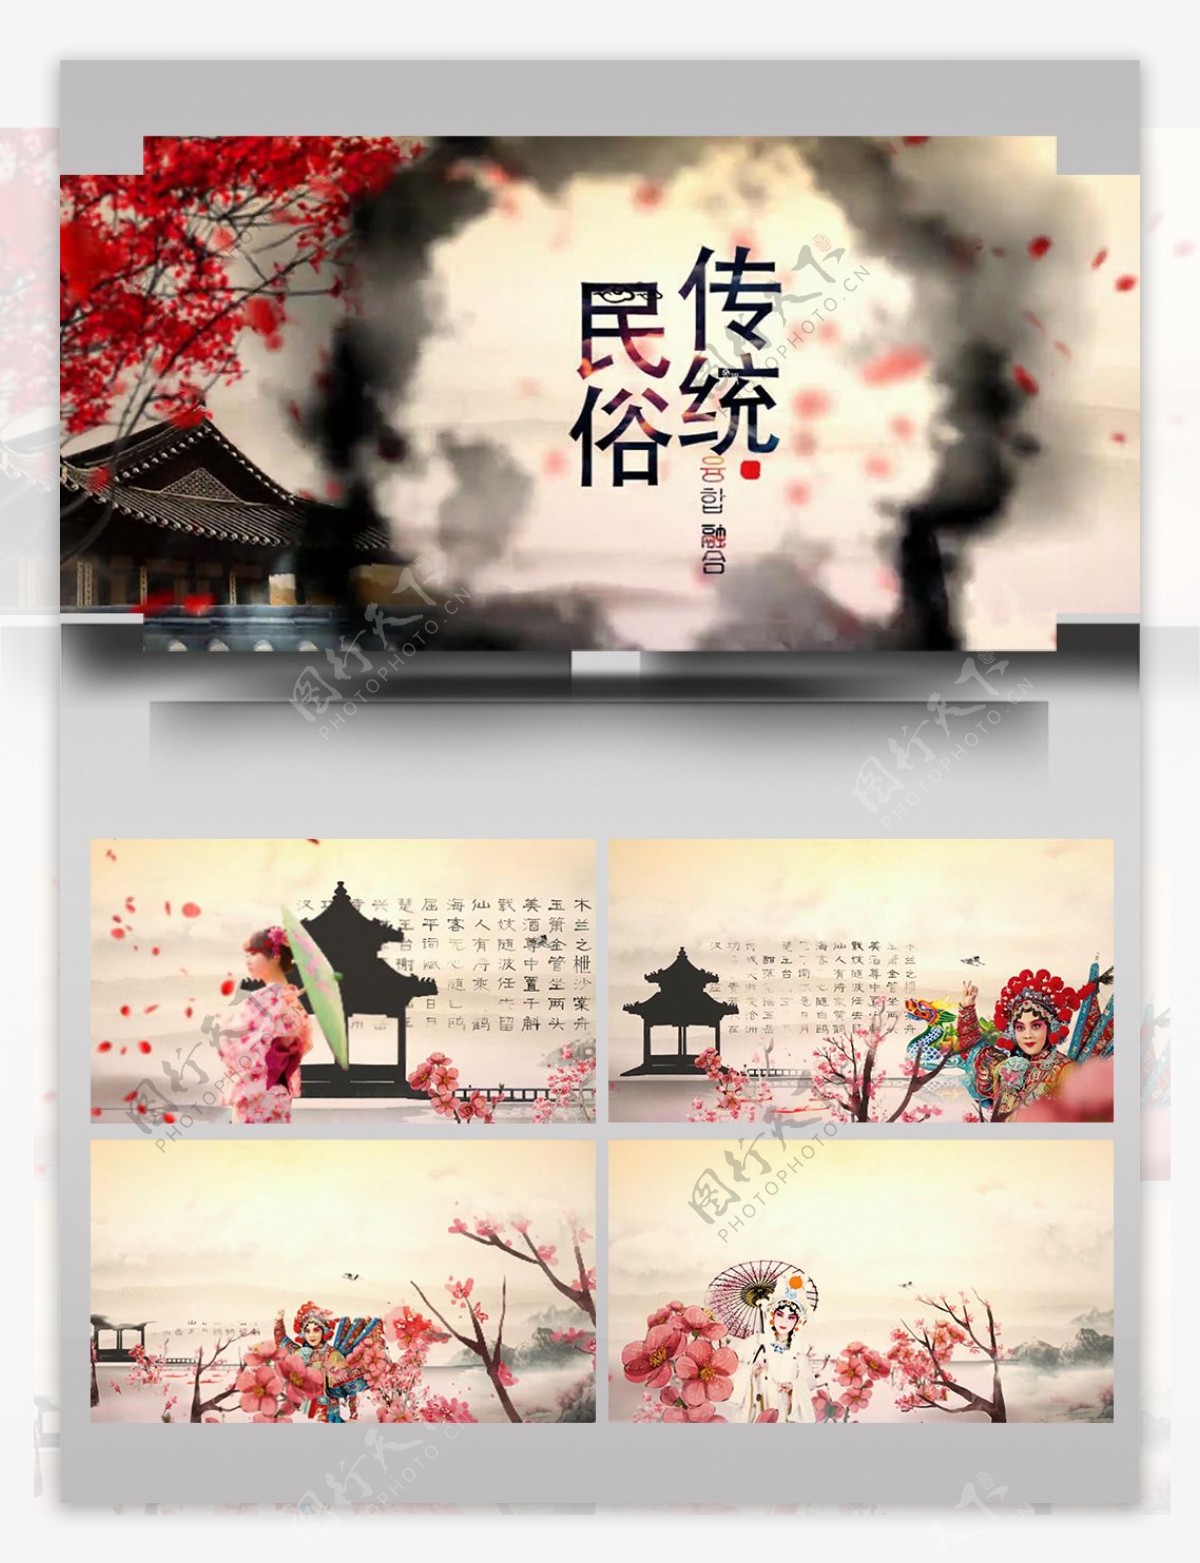 中国风水墨传统民俗文化片头ae模板